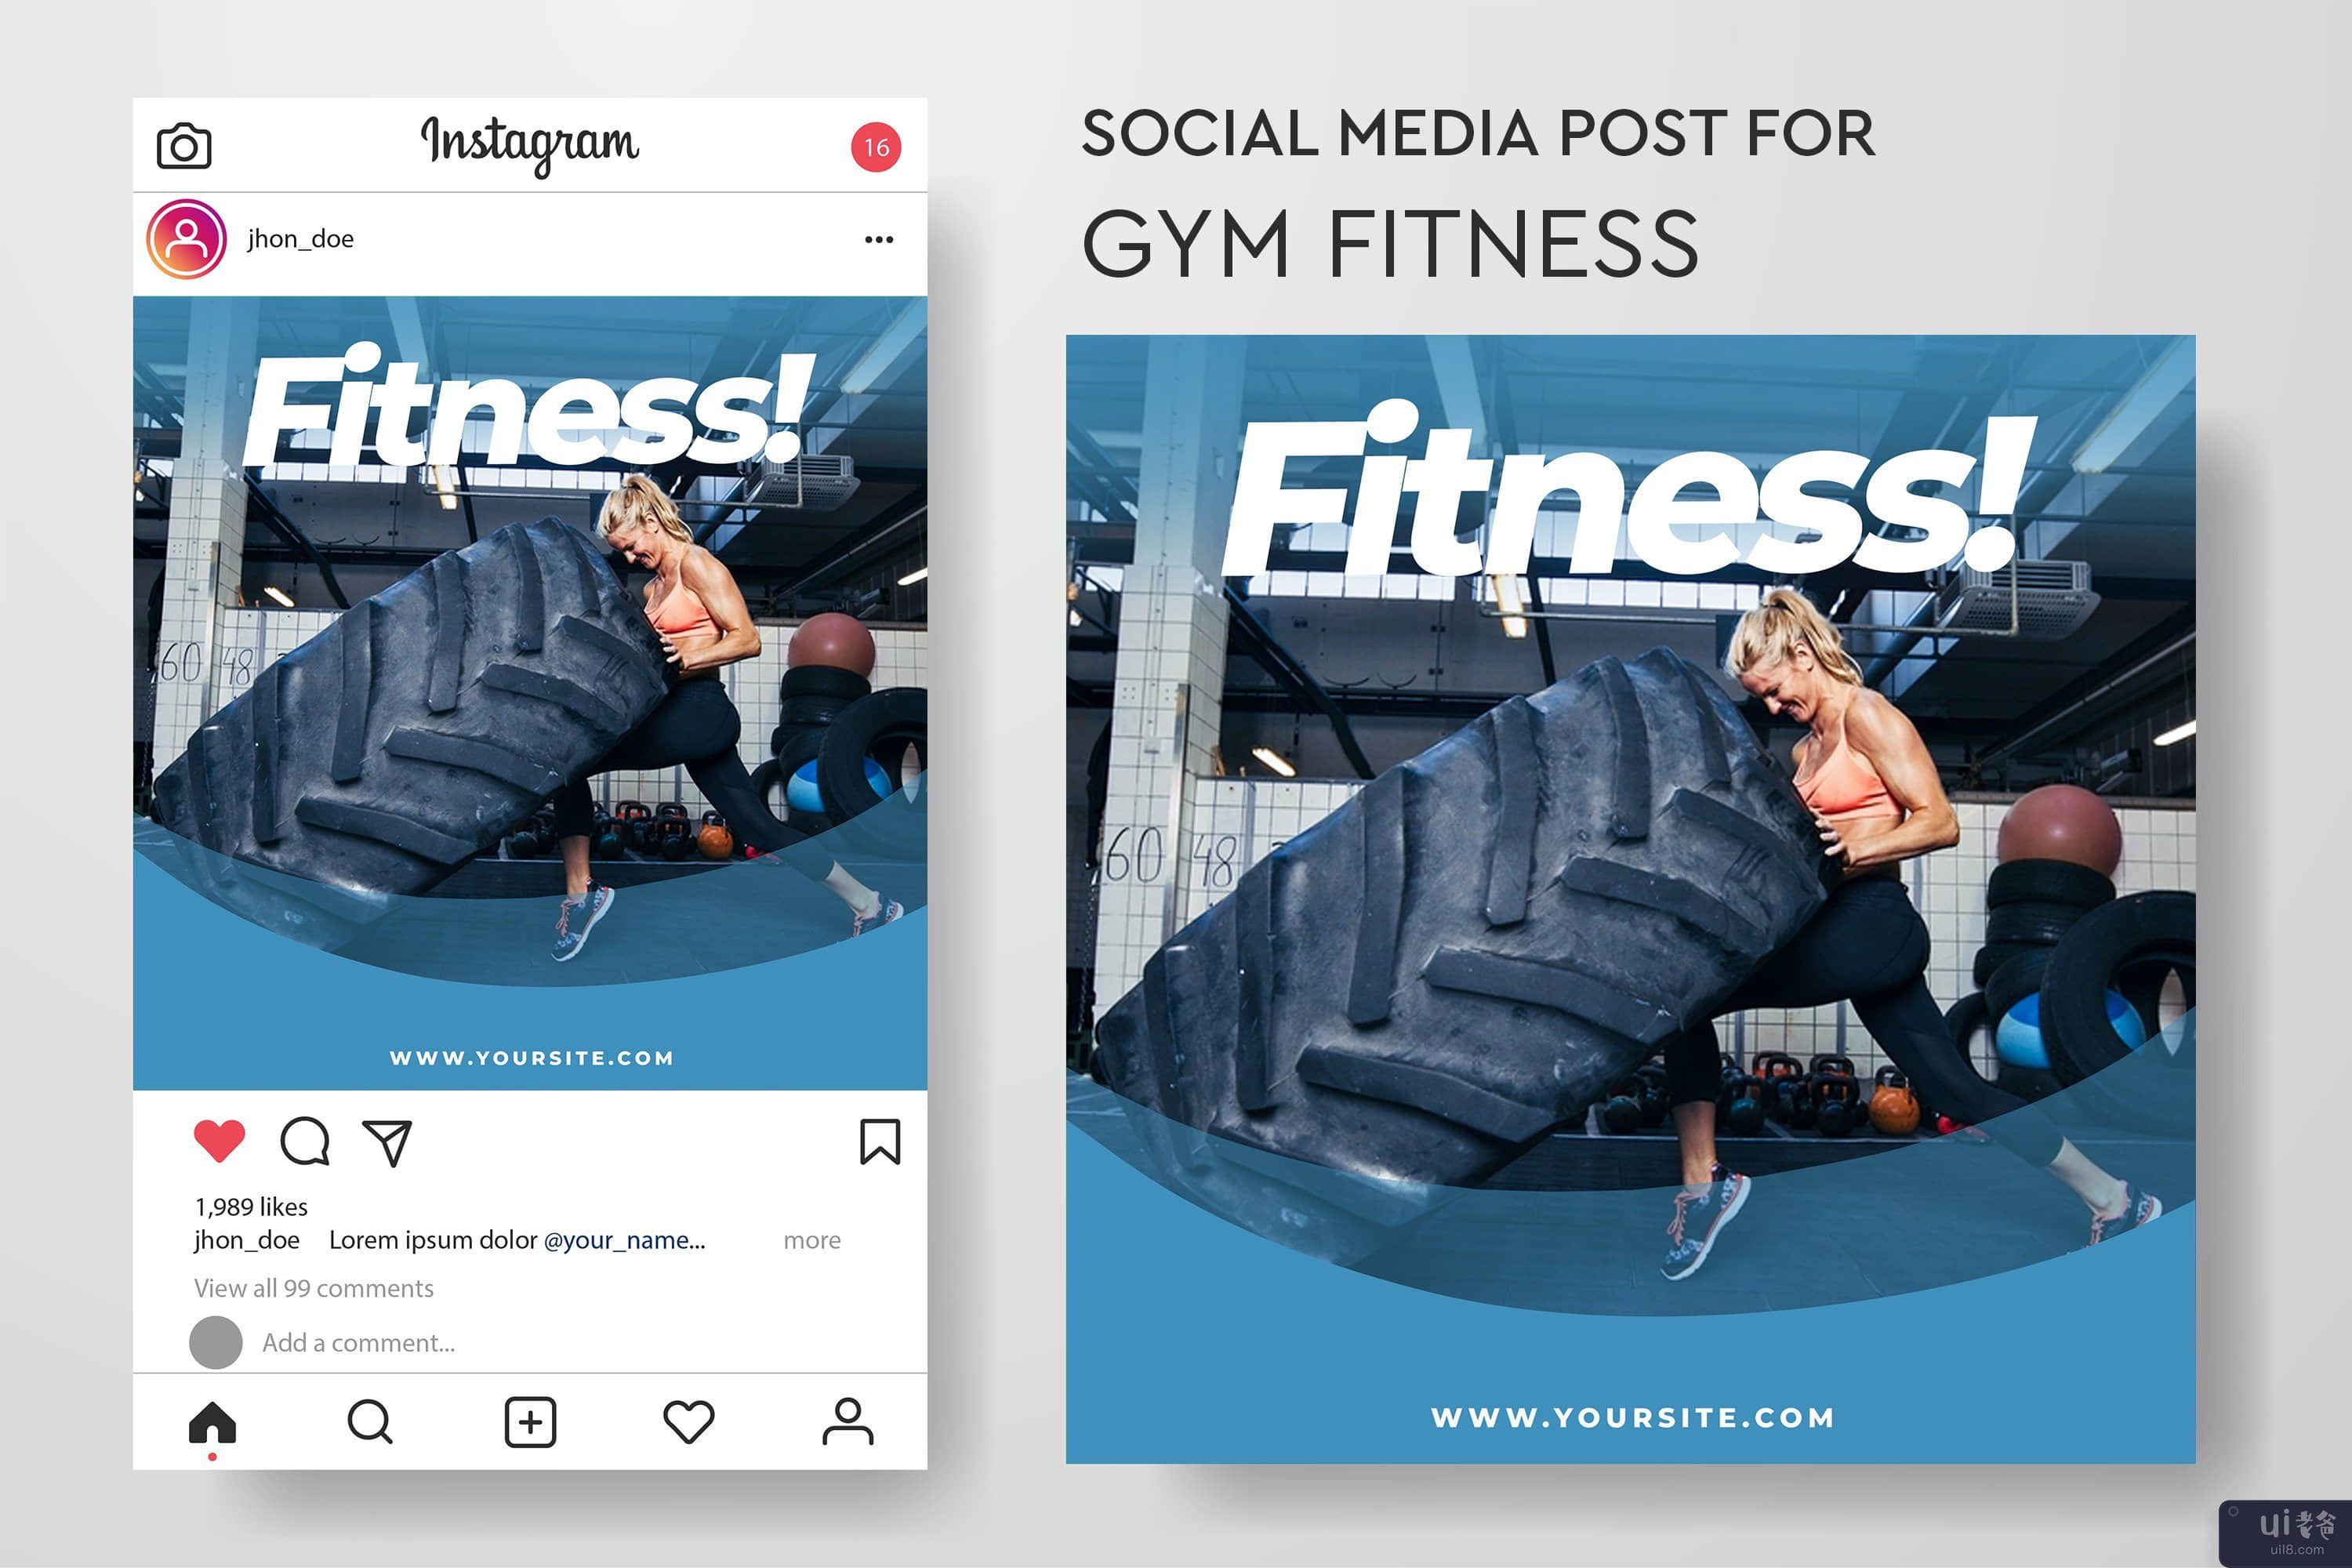 健身房健身的社交媒体帖子模板集合(Social media post template collection for gym fitness)插图5